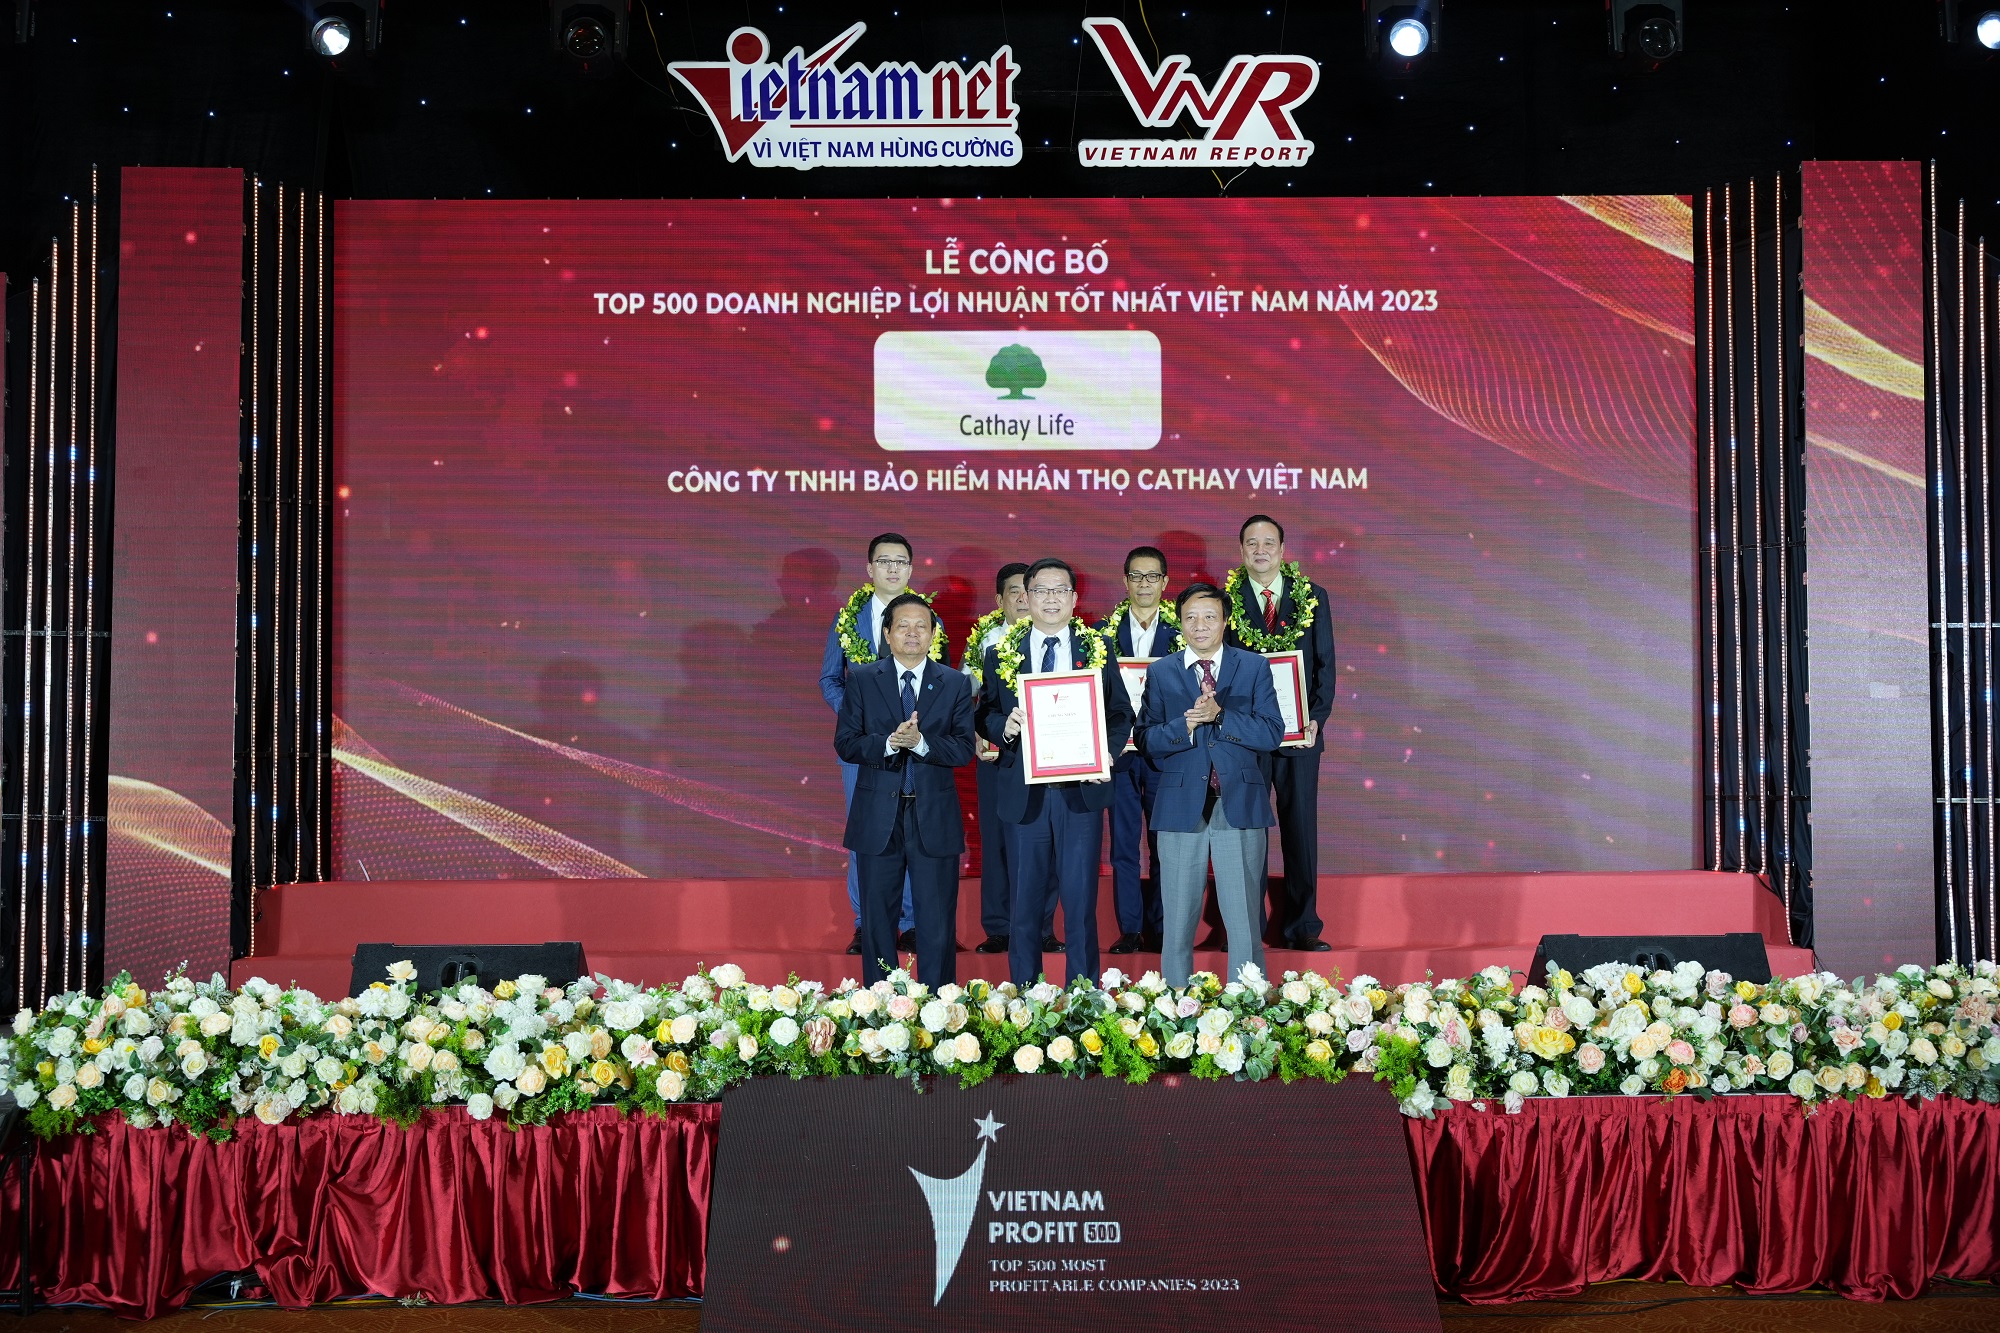 Cathay Life Việt Nam vào Top 500 Doanh nghiệp lợi nhuận tốt nhất Việt Nam năm 2023